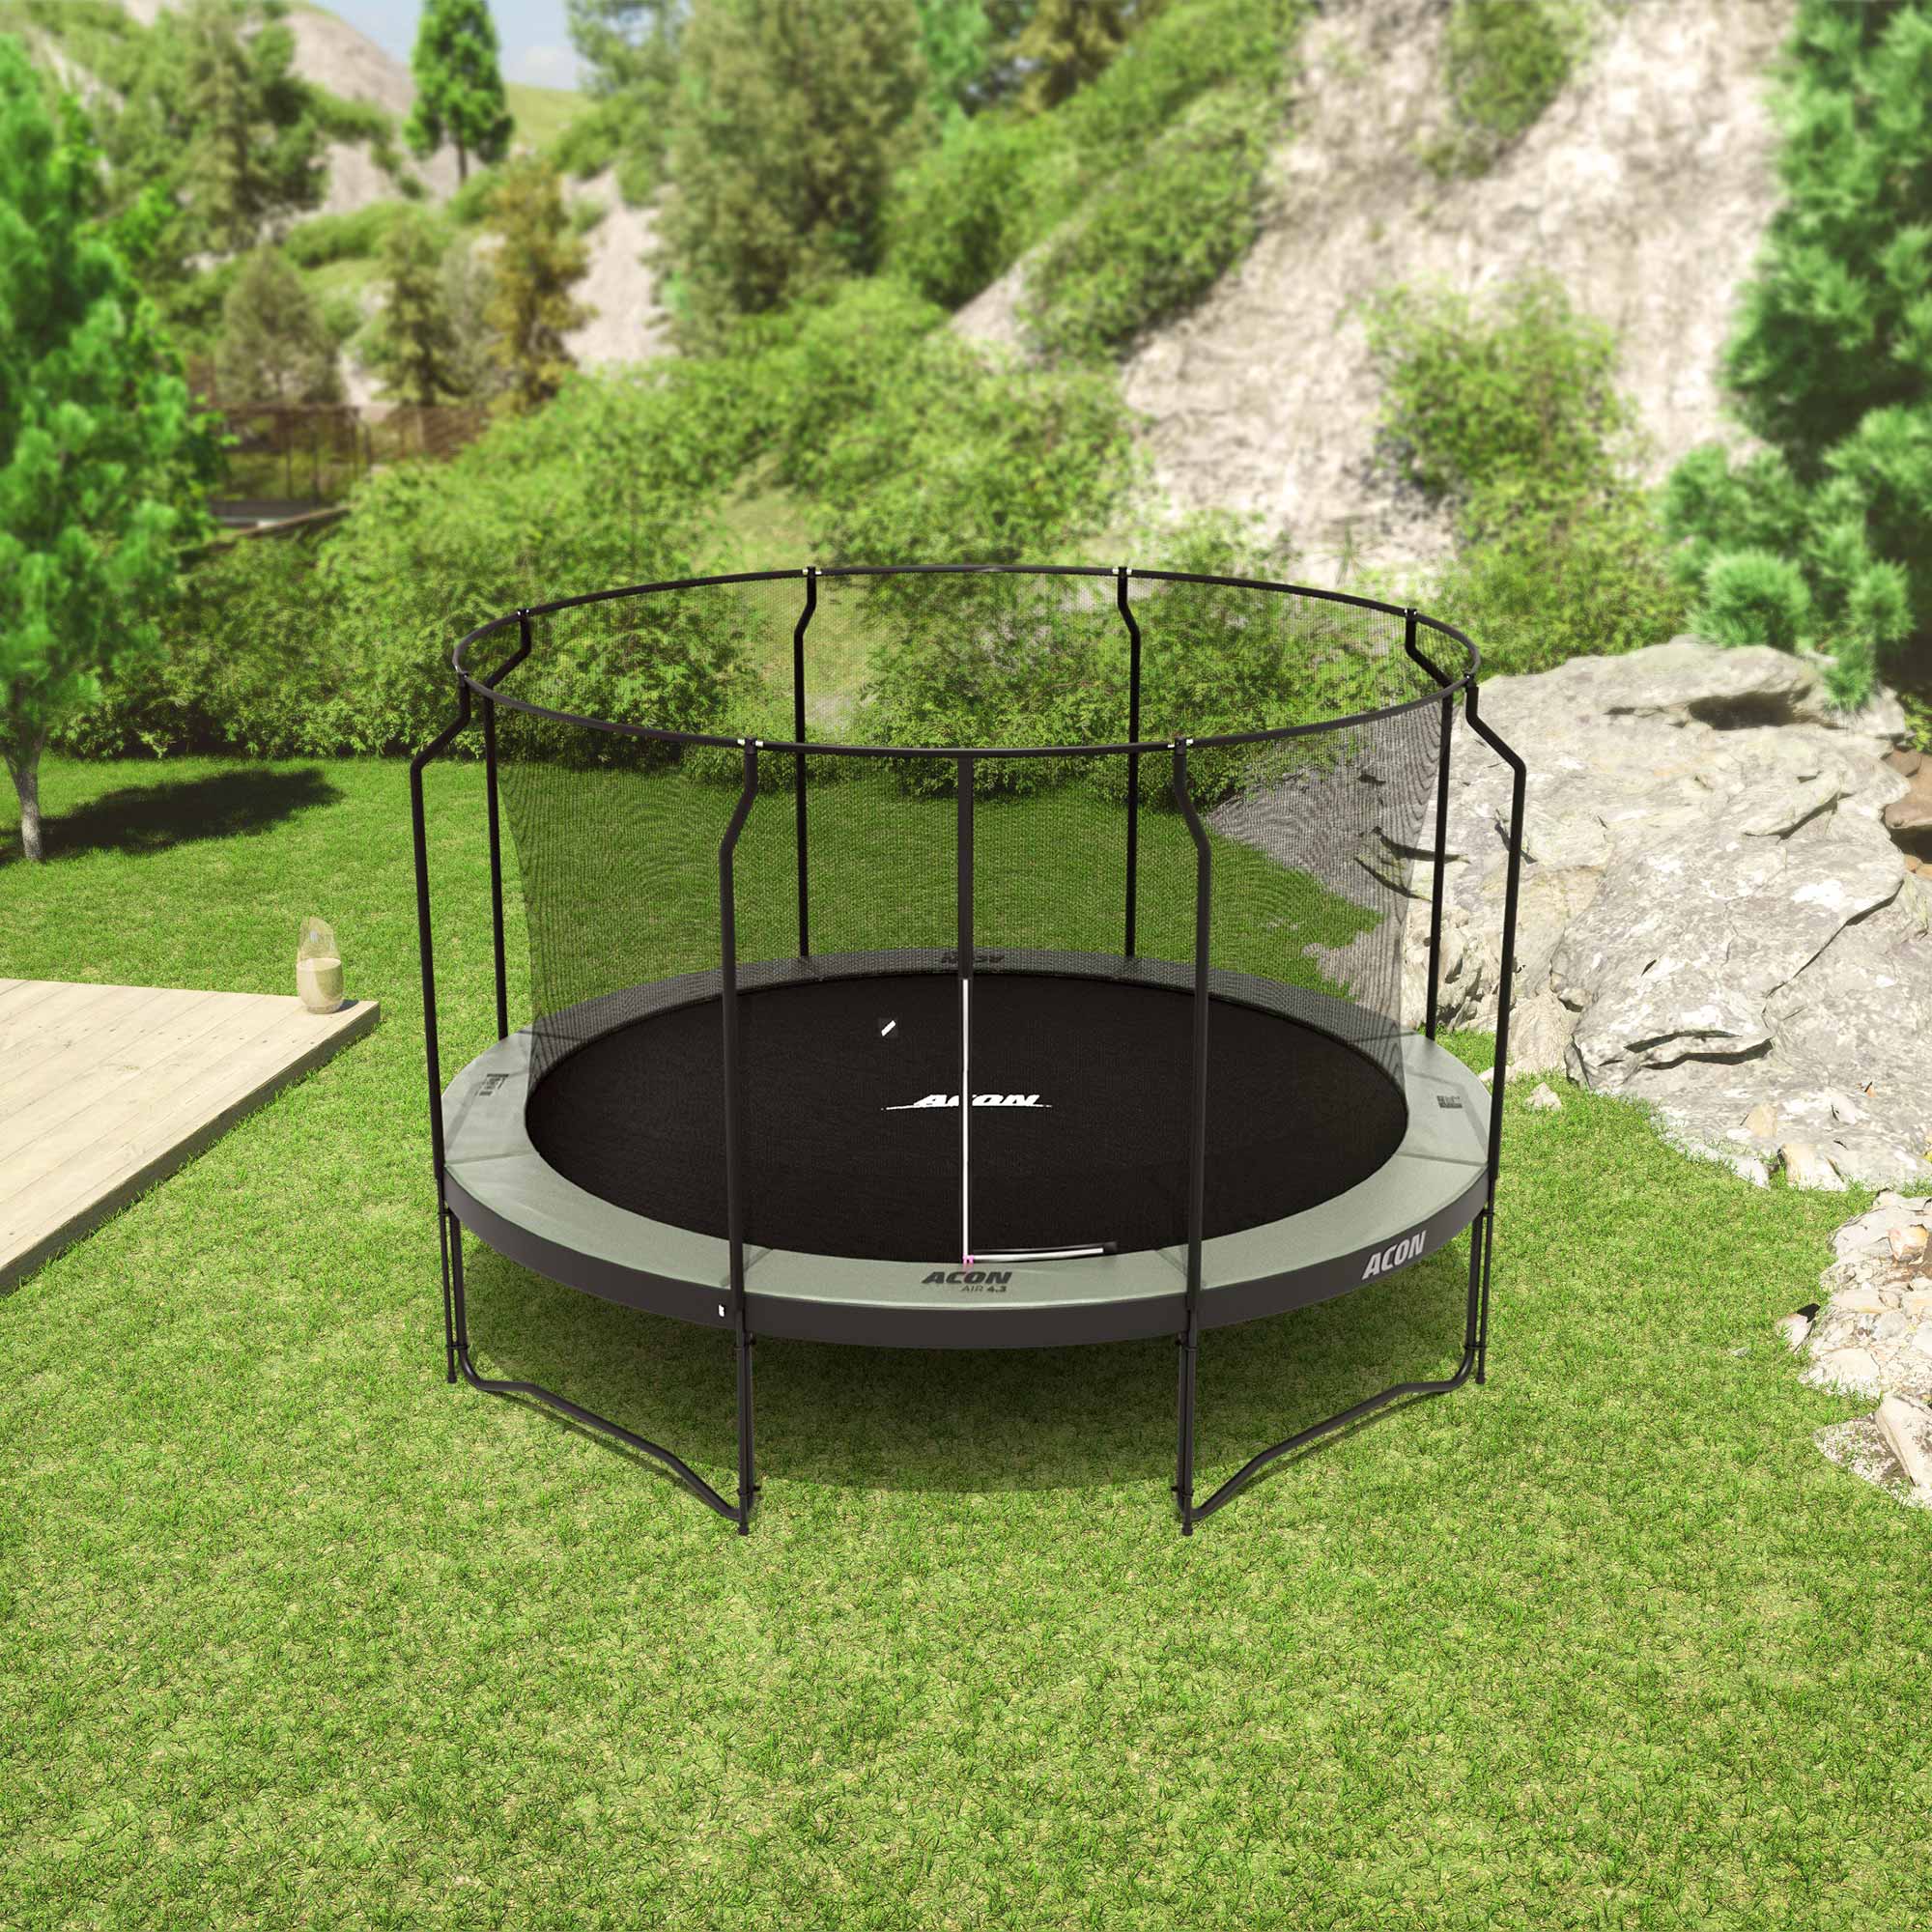 Pyöreä Acon trampoliini premium turvaverkolla.